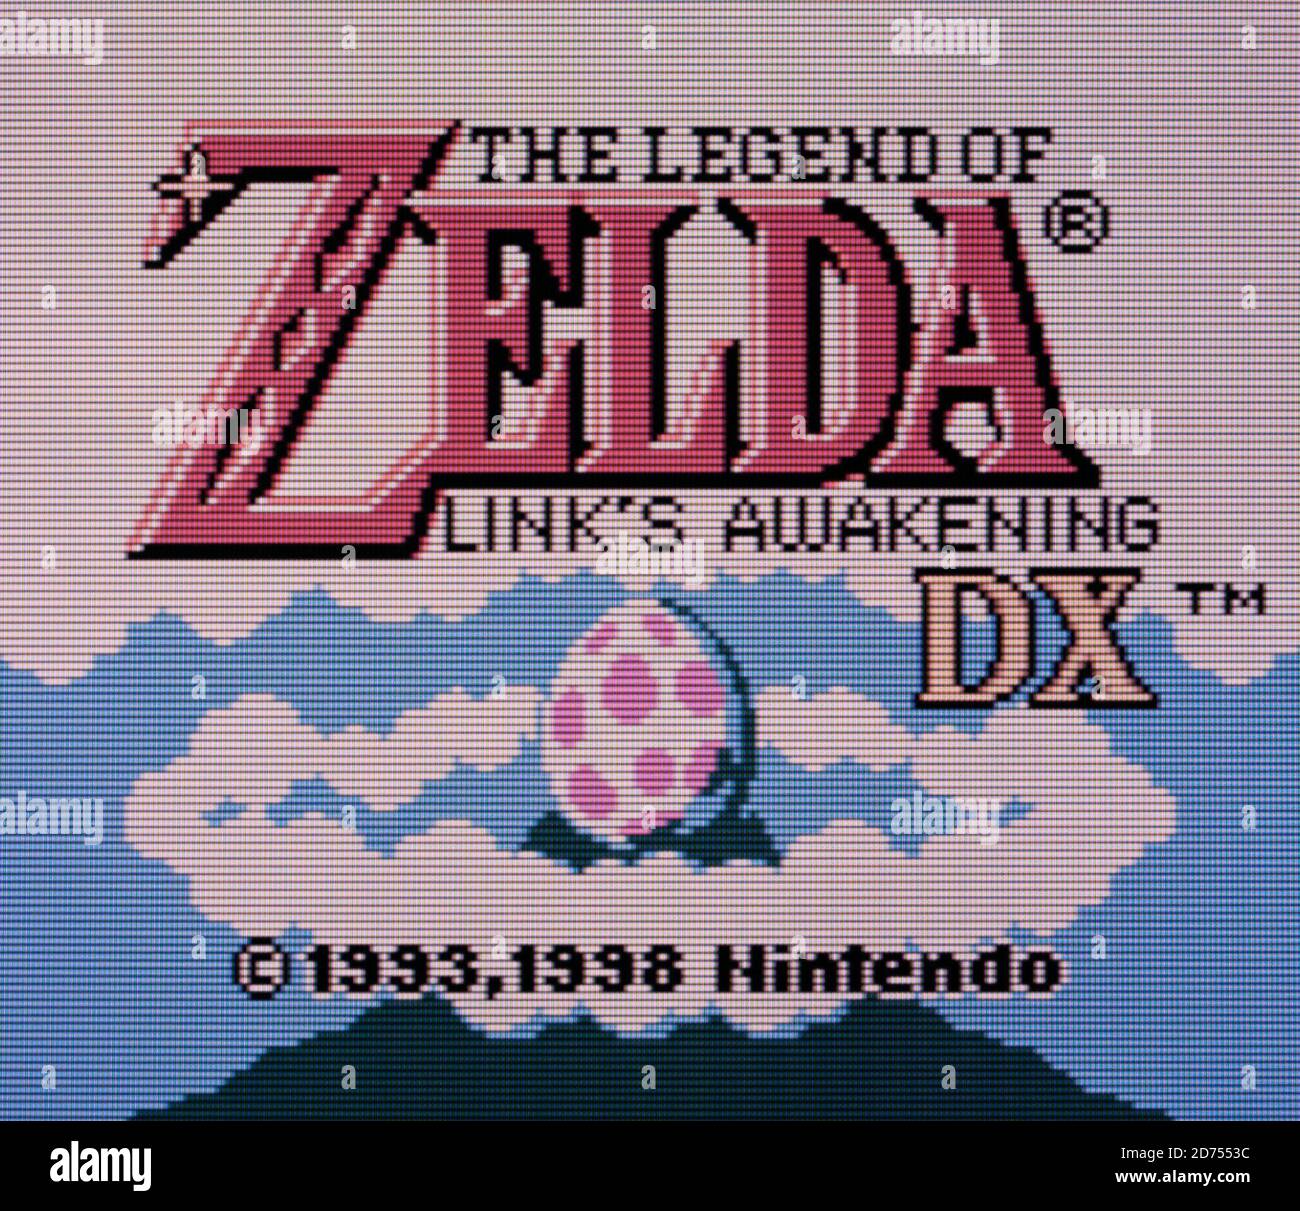 Image: Image - 574470], The Legend of Zelda